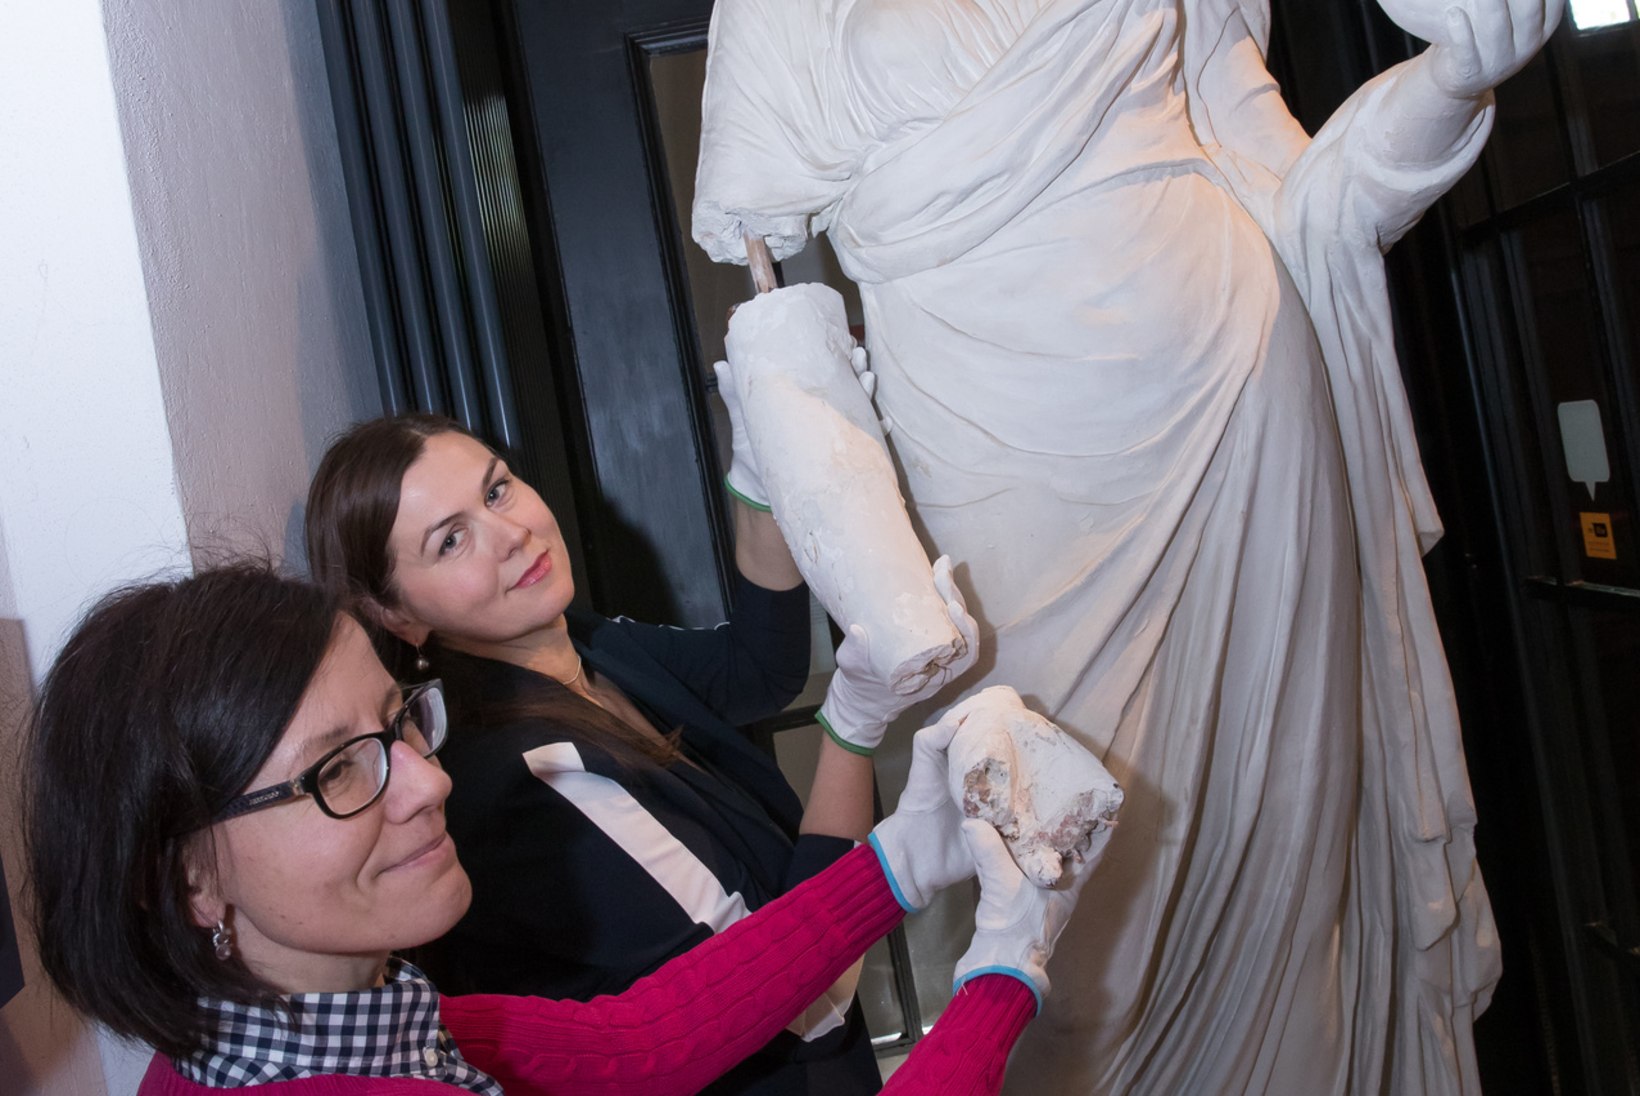 EESTI SUURIMAD MUUSEUMIÕNNETUSED: ka hoolega hoitud muuseumiesemed võivad kogemata puruneda